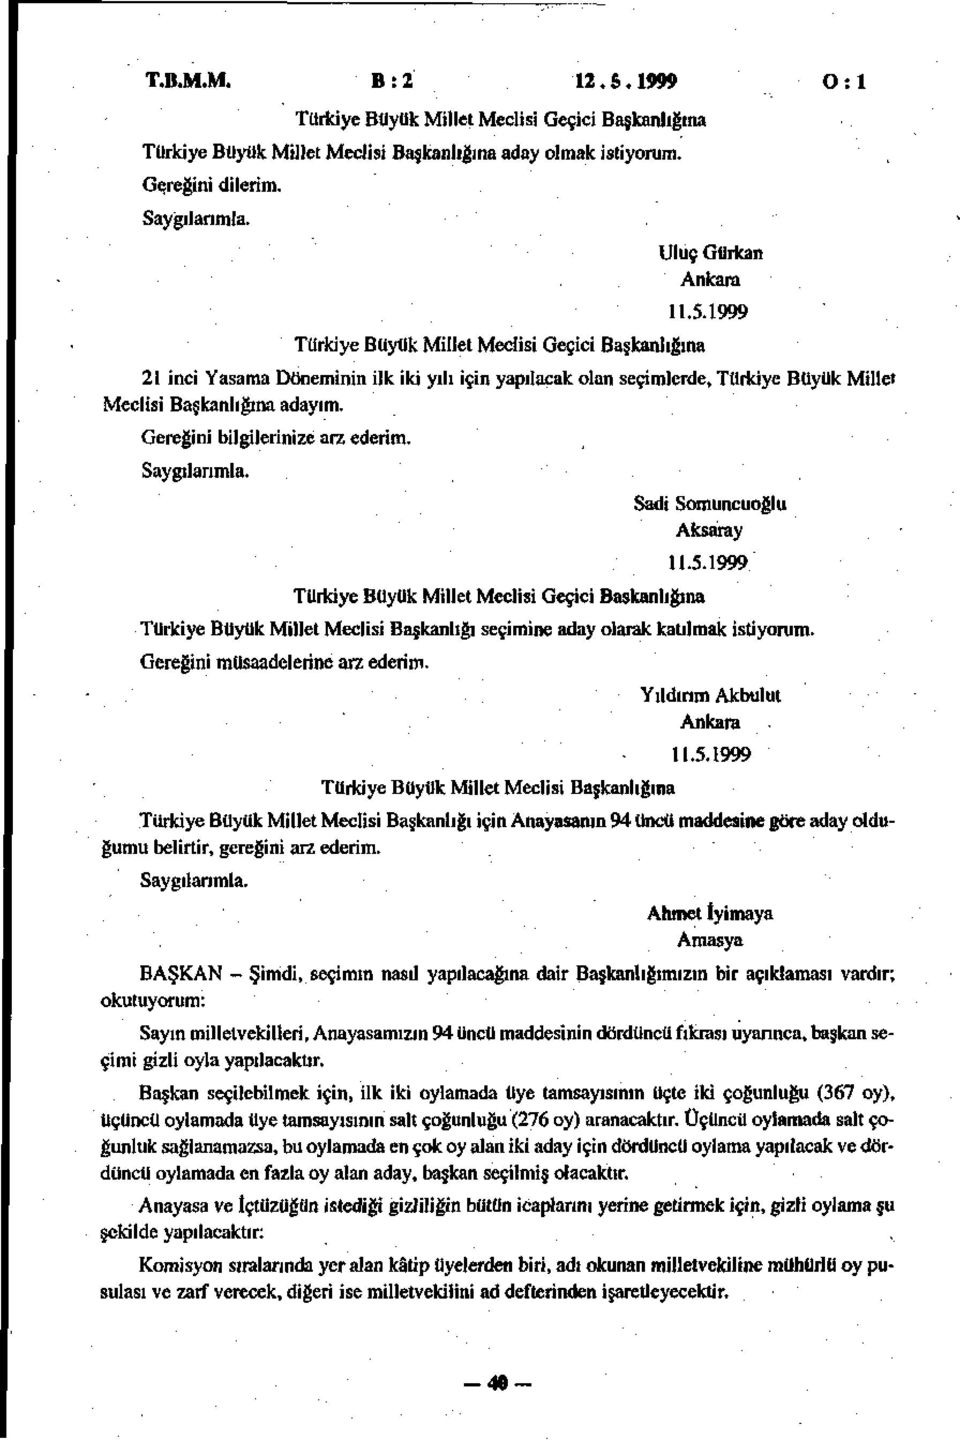 Türkiye Büyük Millet Meclisi Geçici Başkanlığına Sadi Somuncuoğlu Aksaray 11.5.1999 Türkiye Büyük Millet Meclisi Başkanlığı seçimine aday olarak katılmak istiyorum. Gereğini müsaadelerine arz ederim.